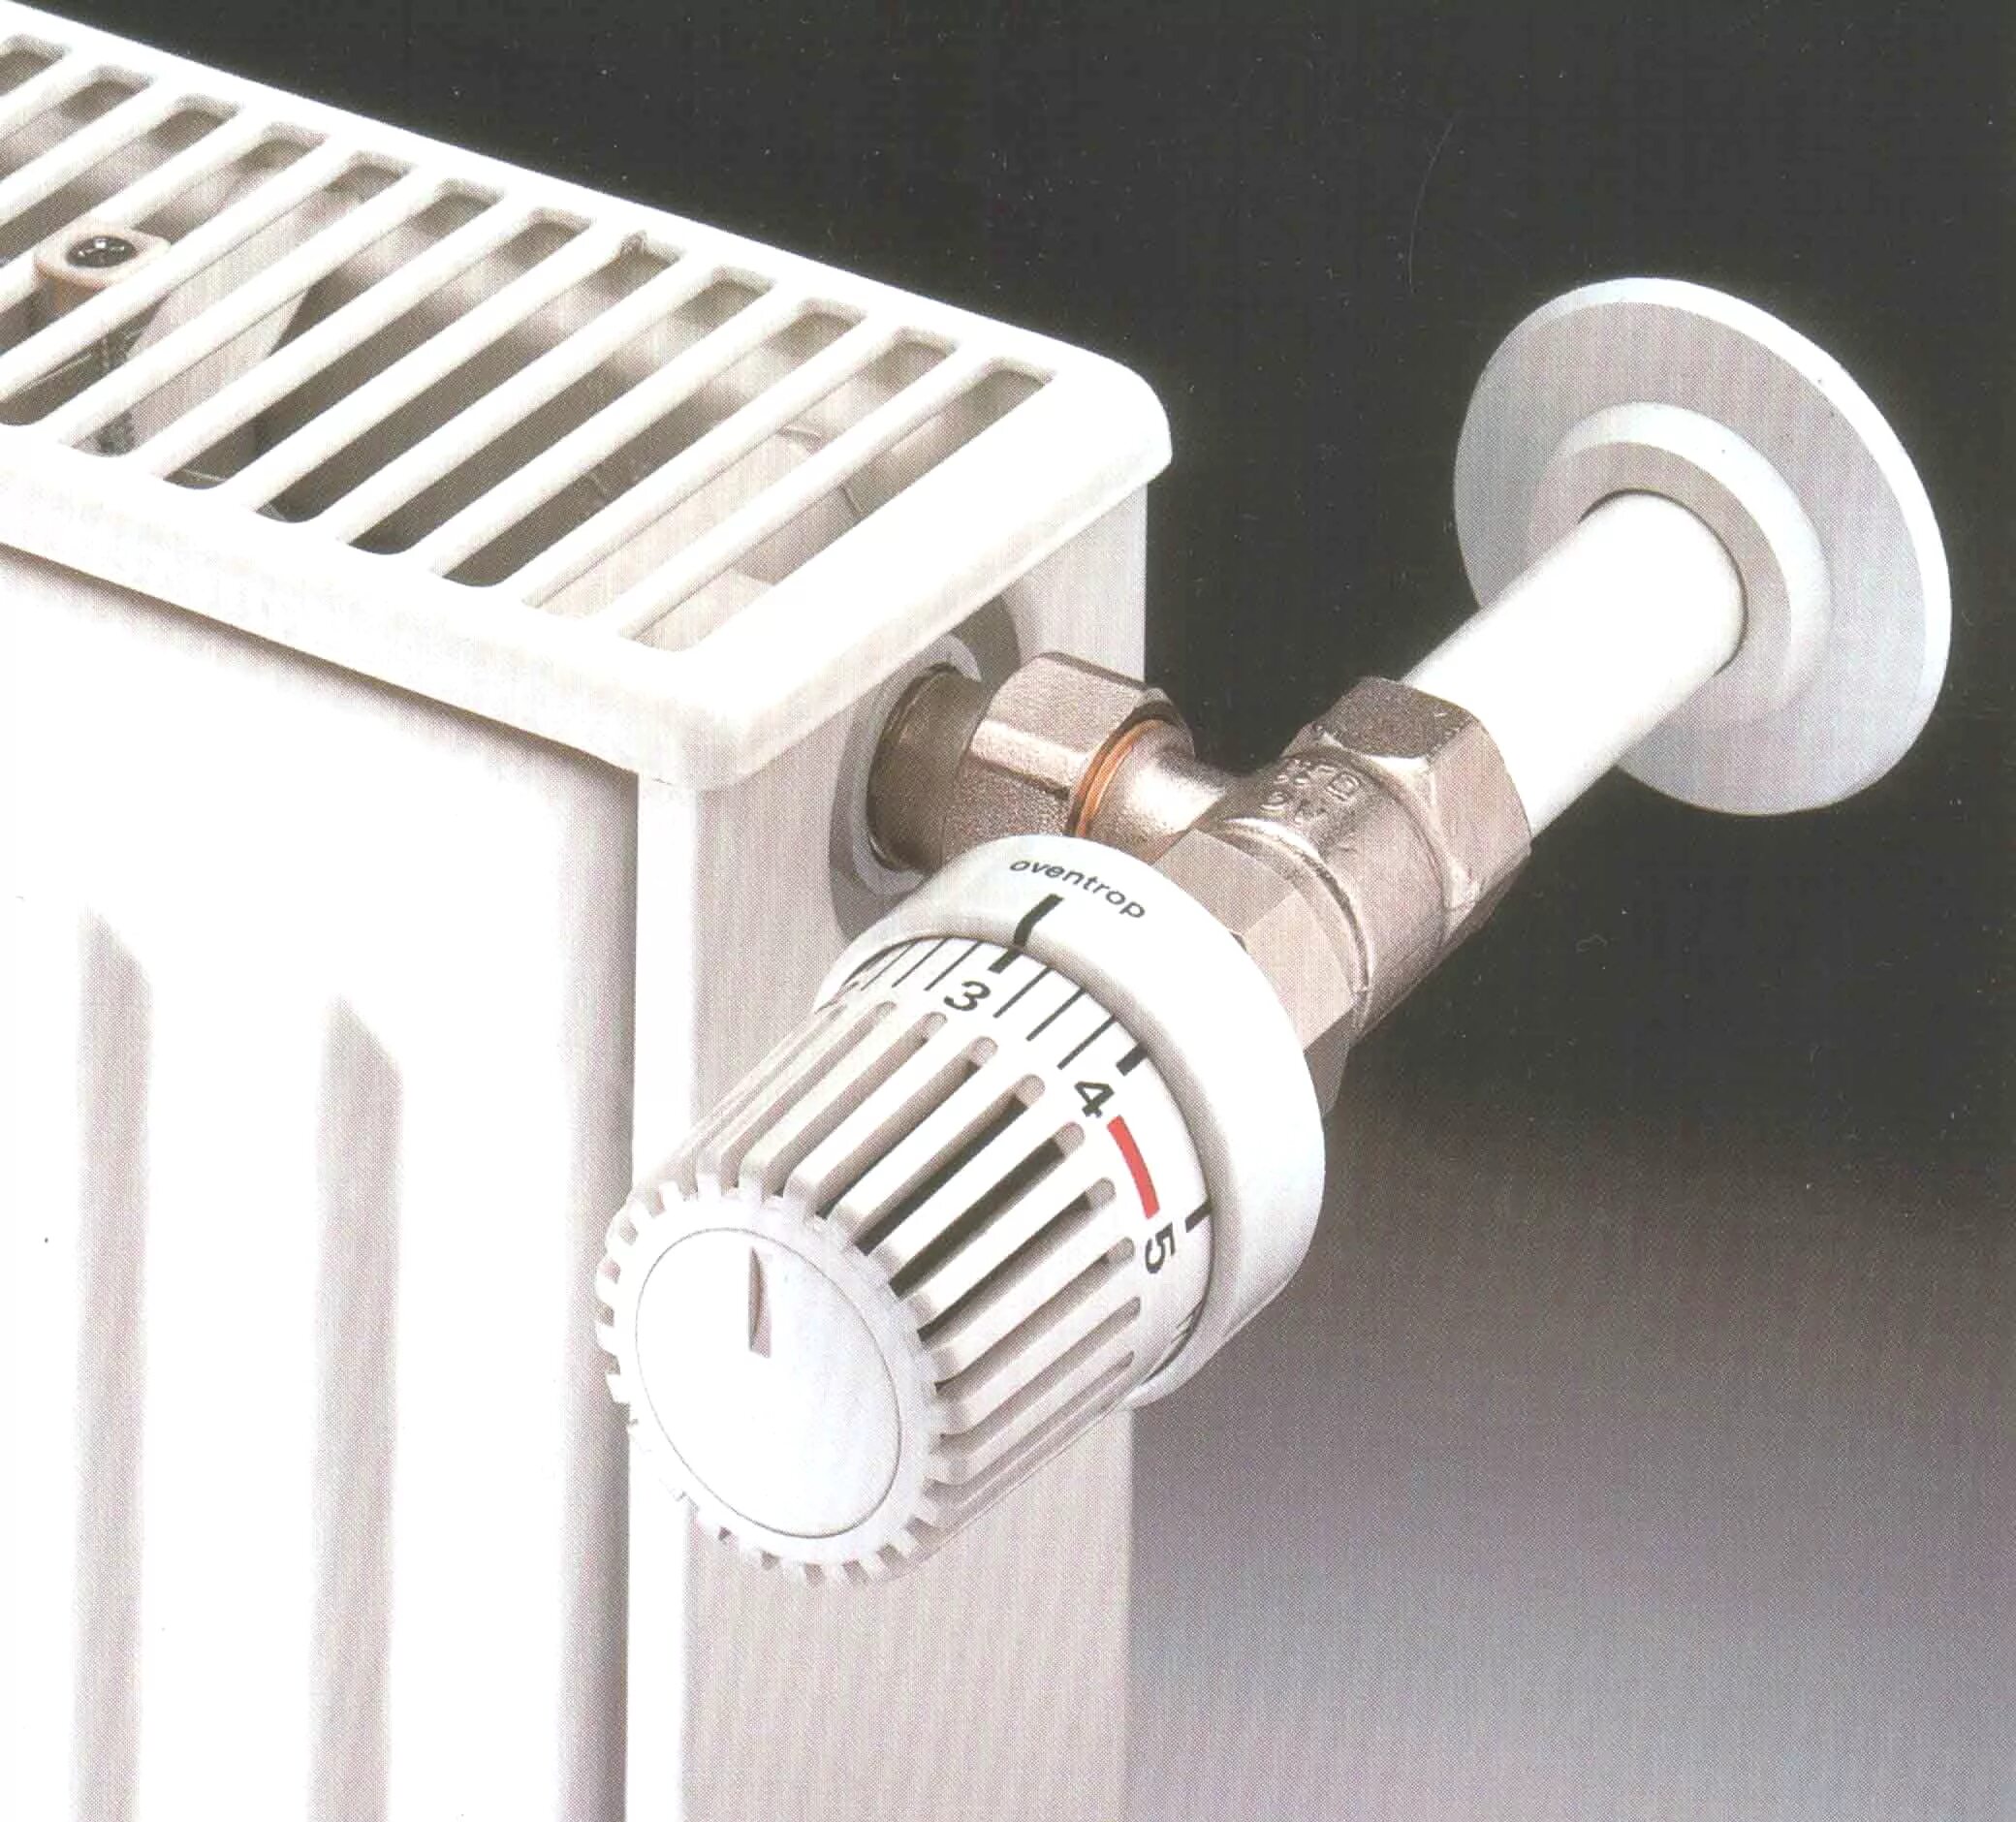 Регулятор тепла для батарей отопления Danfoss. Vrt регулятор радиатора отопления. Терморегулятор осевой для радиатора отопления. Терморегулятор радиаторный ∅20. Кольцо радиатора отопления